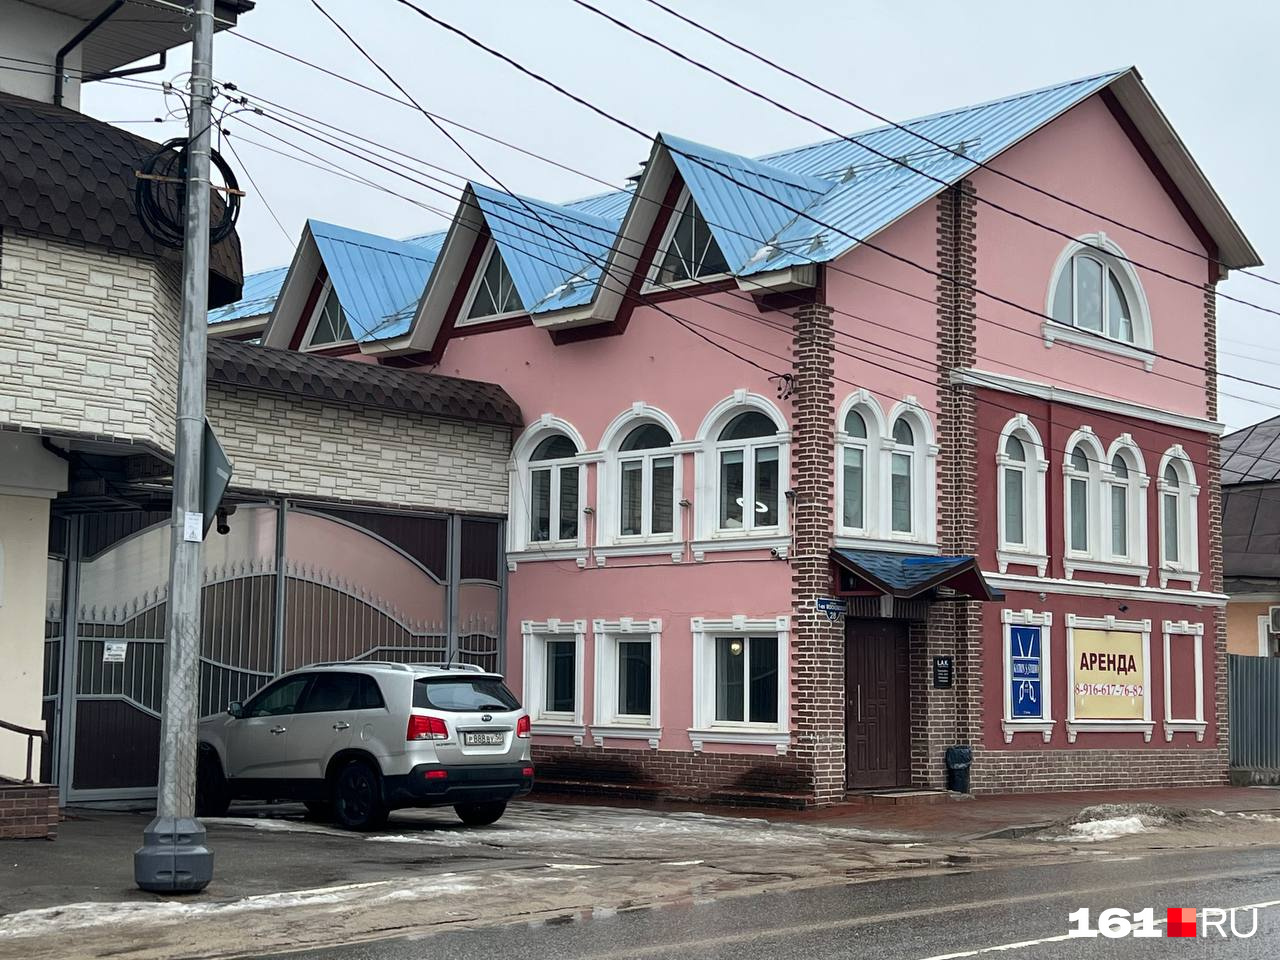 Так выглядит здание, где якобы располагалось учебное заведение в Серпухове